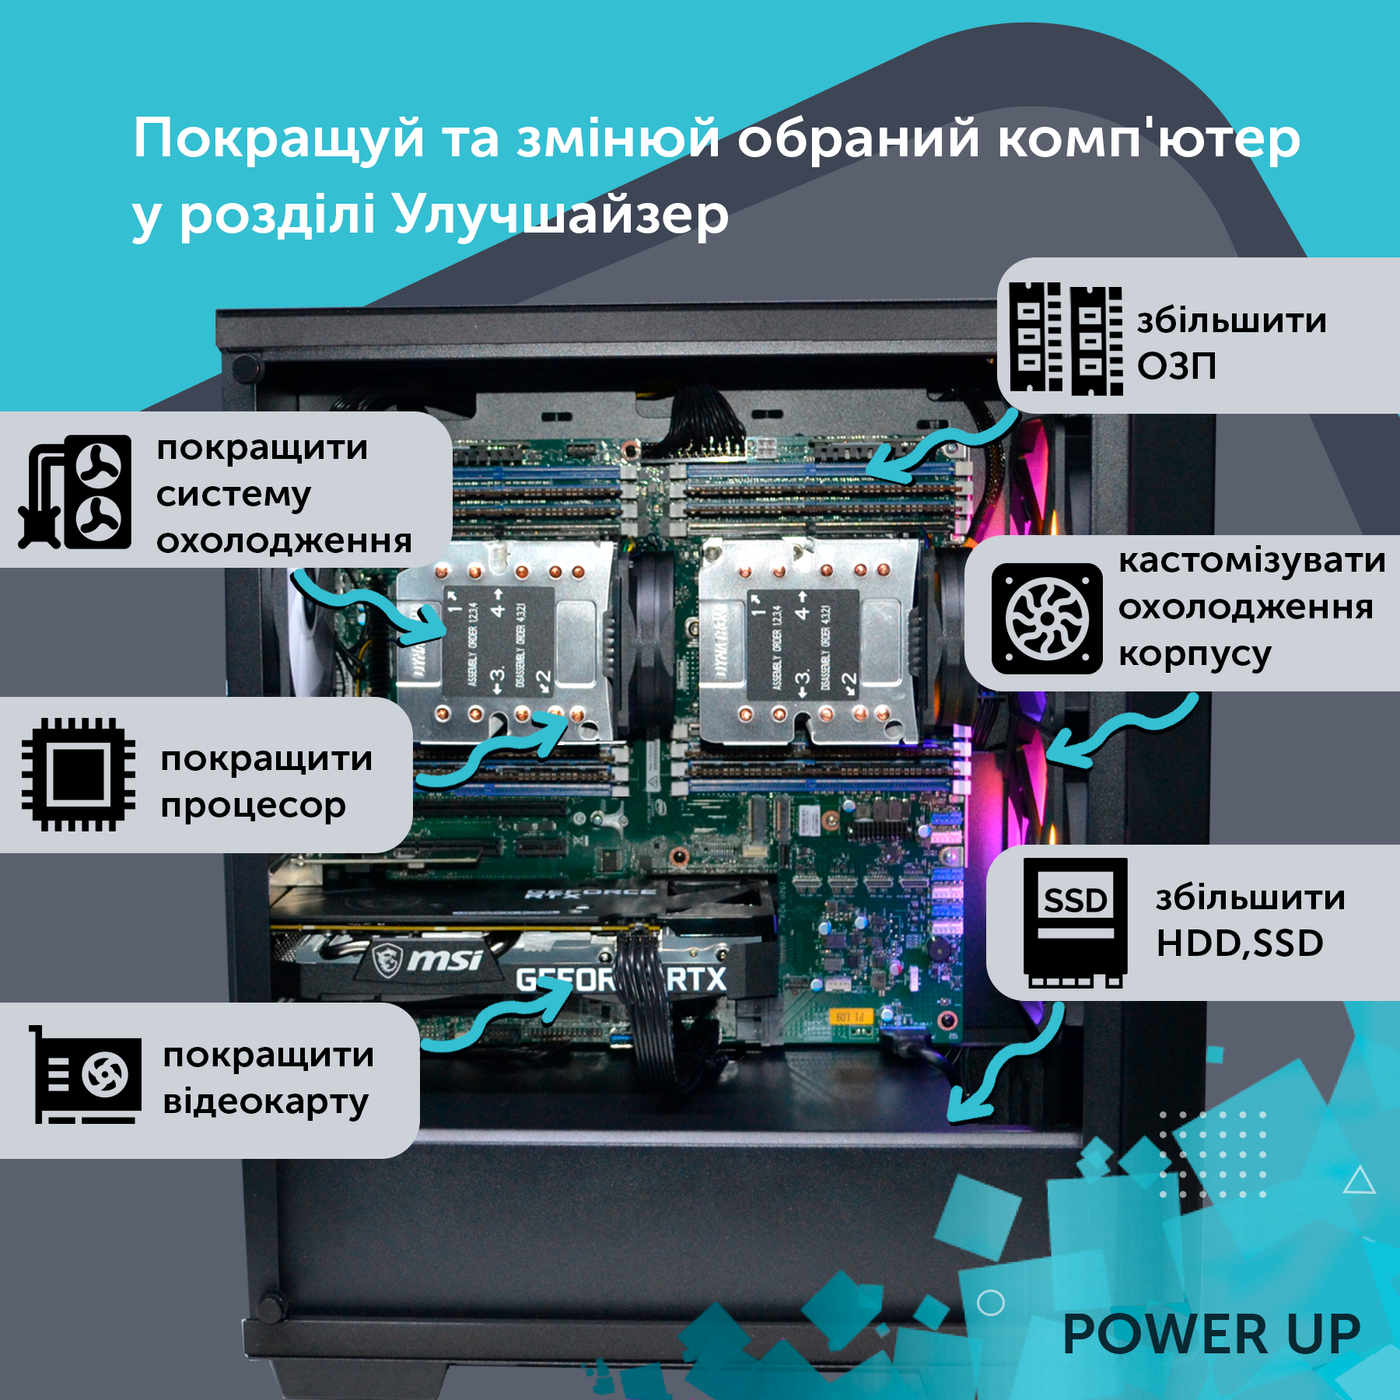 Робоча станція PowerUp Desktop #175 Core i9 13900K/32 GB/SSD 512GB/GeForce GTX 1660Ti 6GB